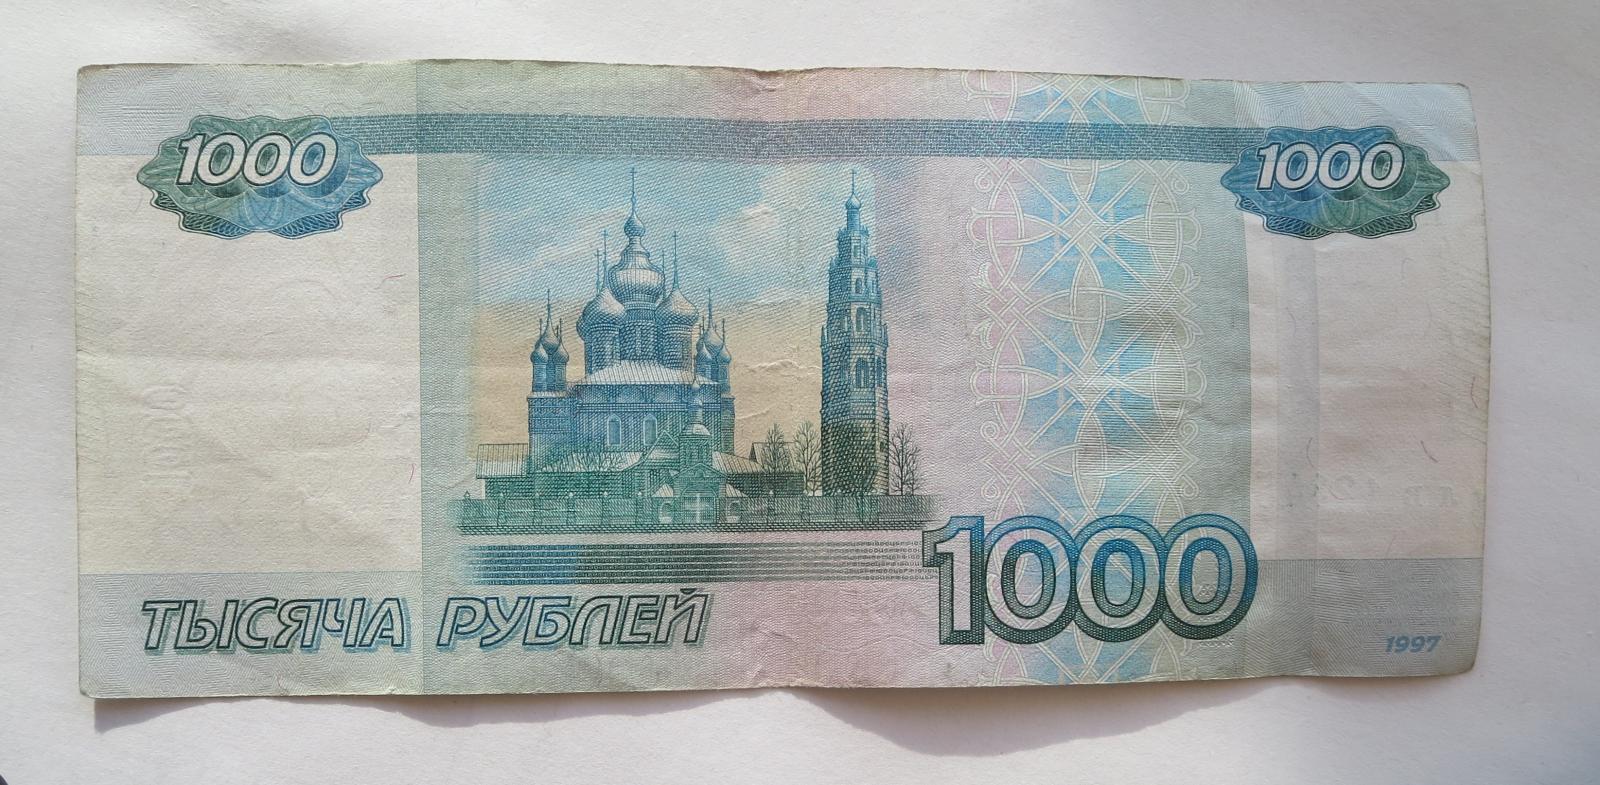 1000 рублей плюс 1000 рублей